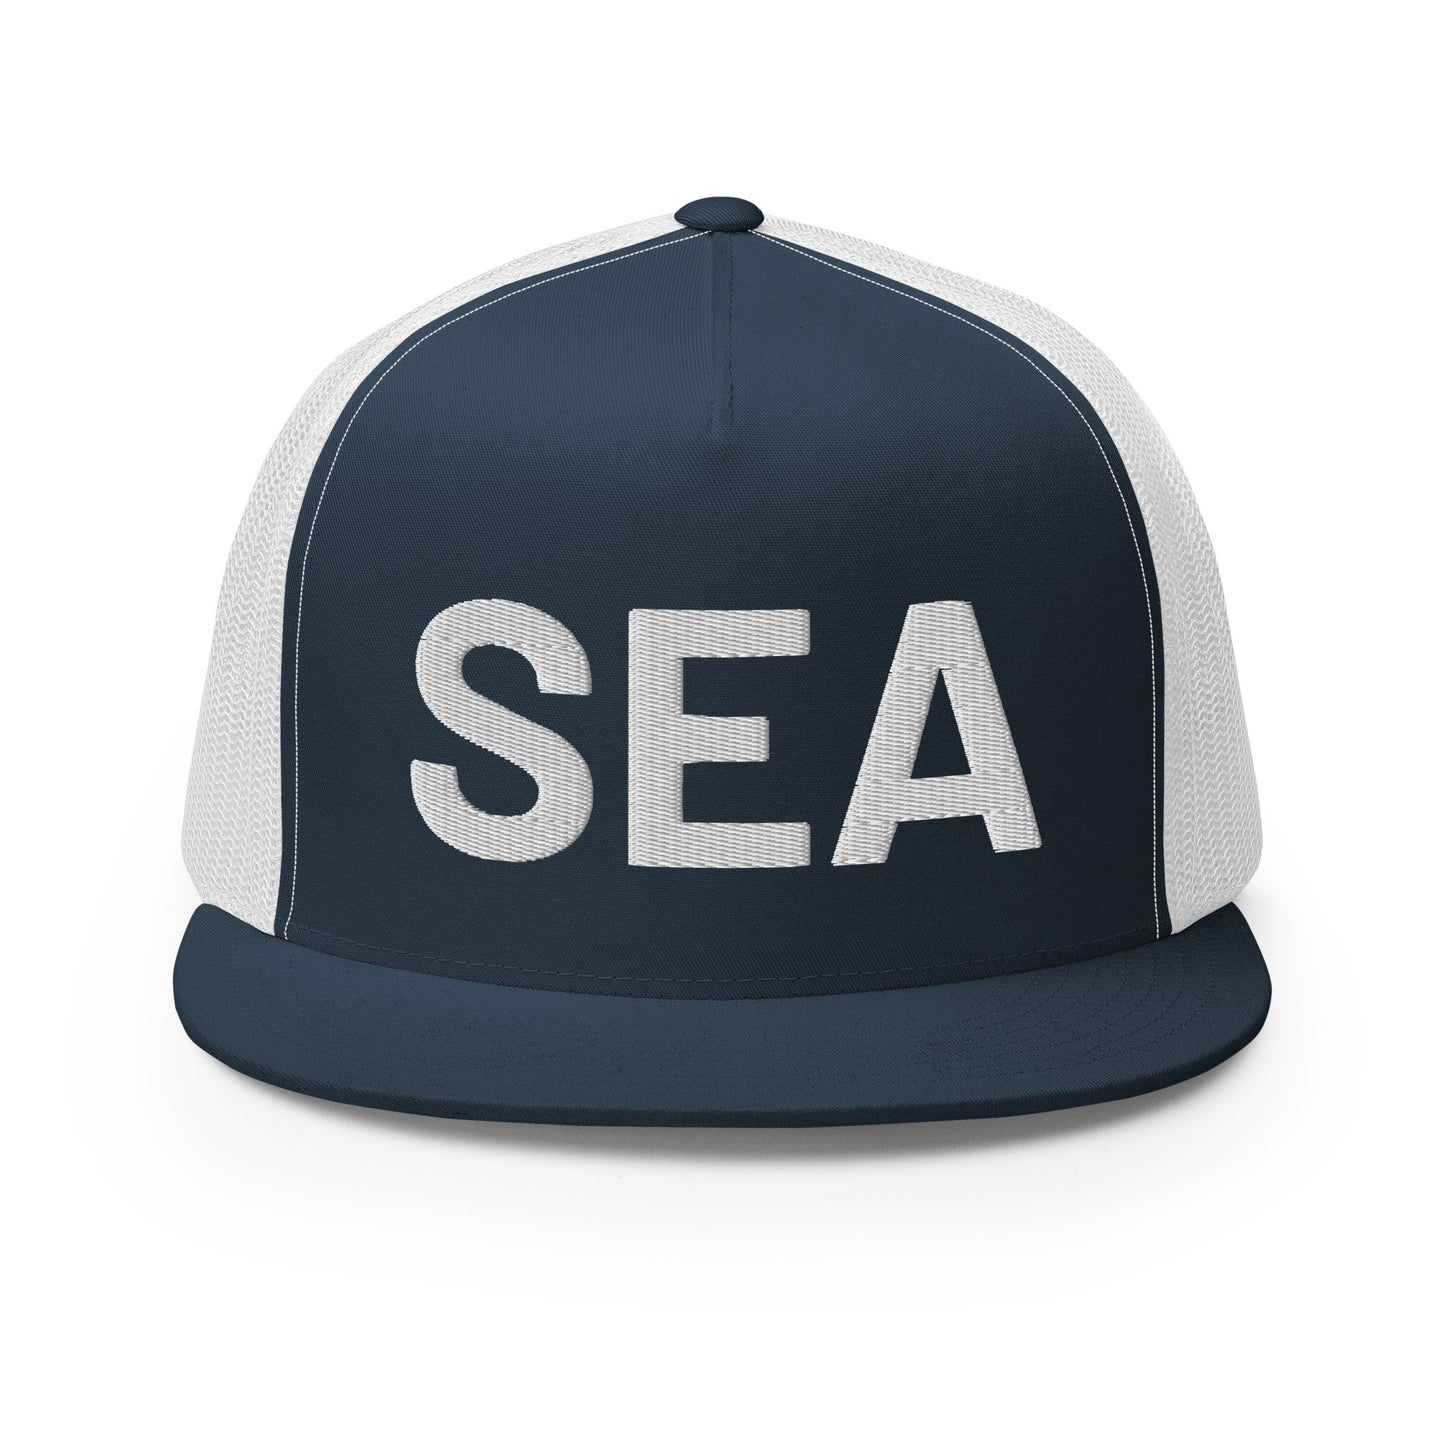 SEA Trucker Hat